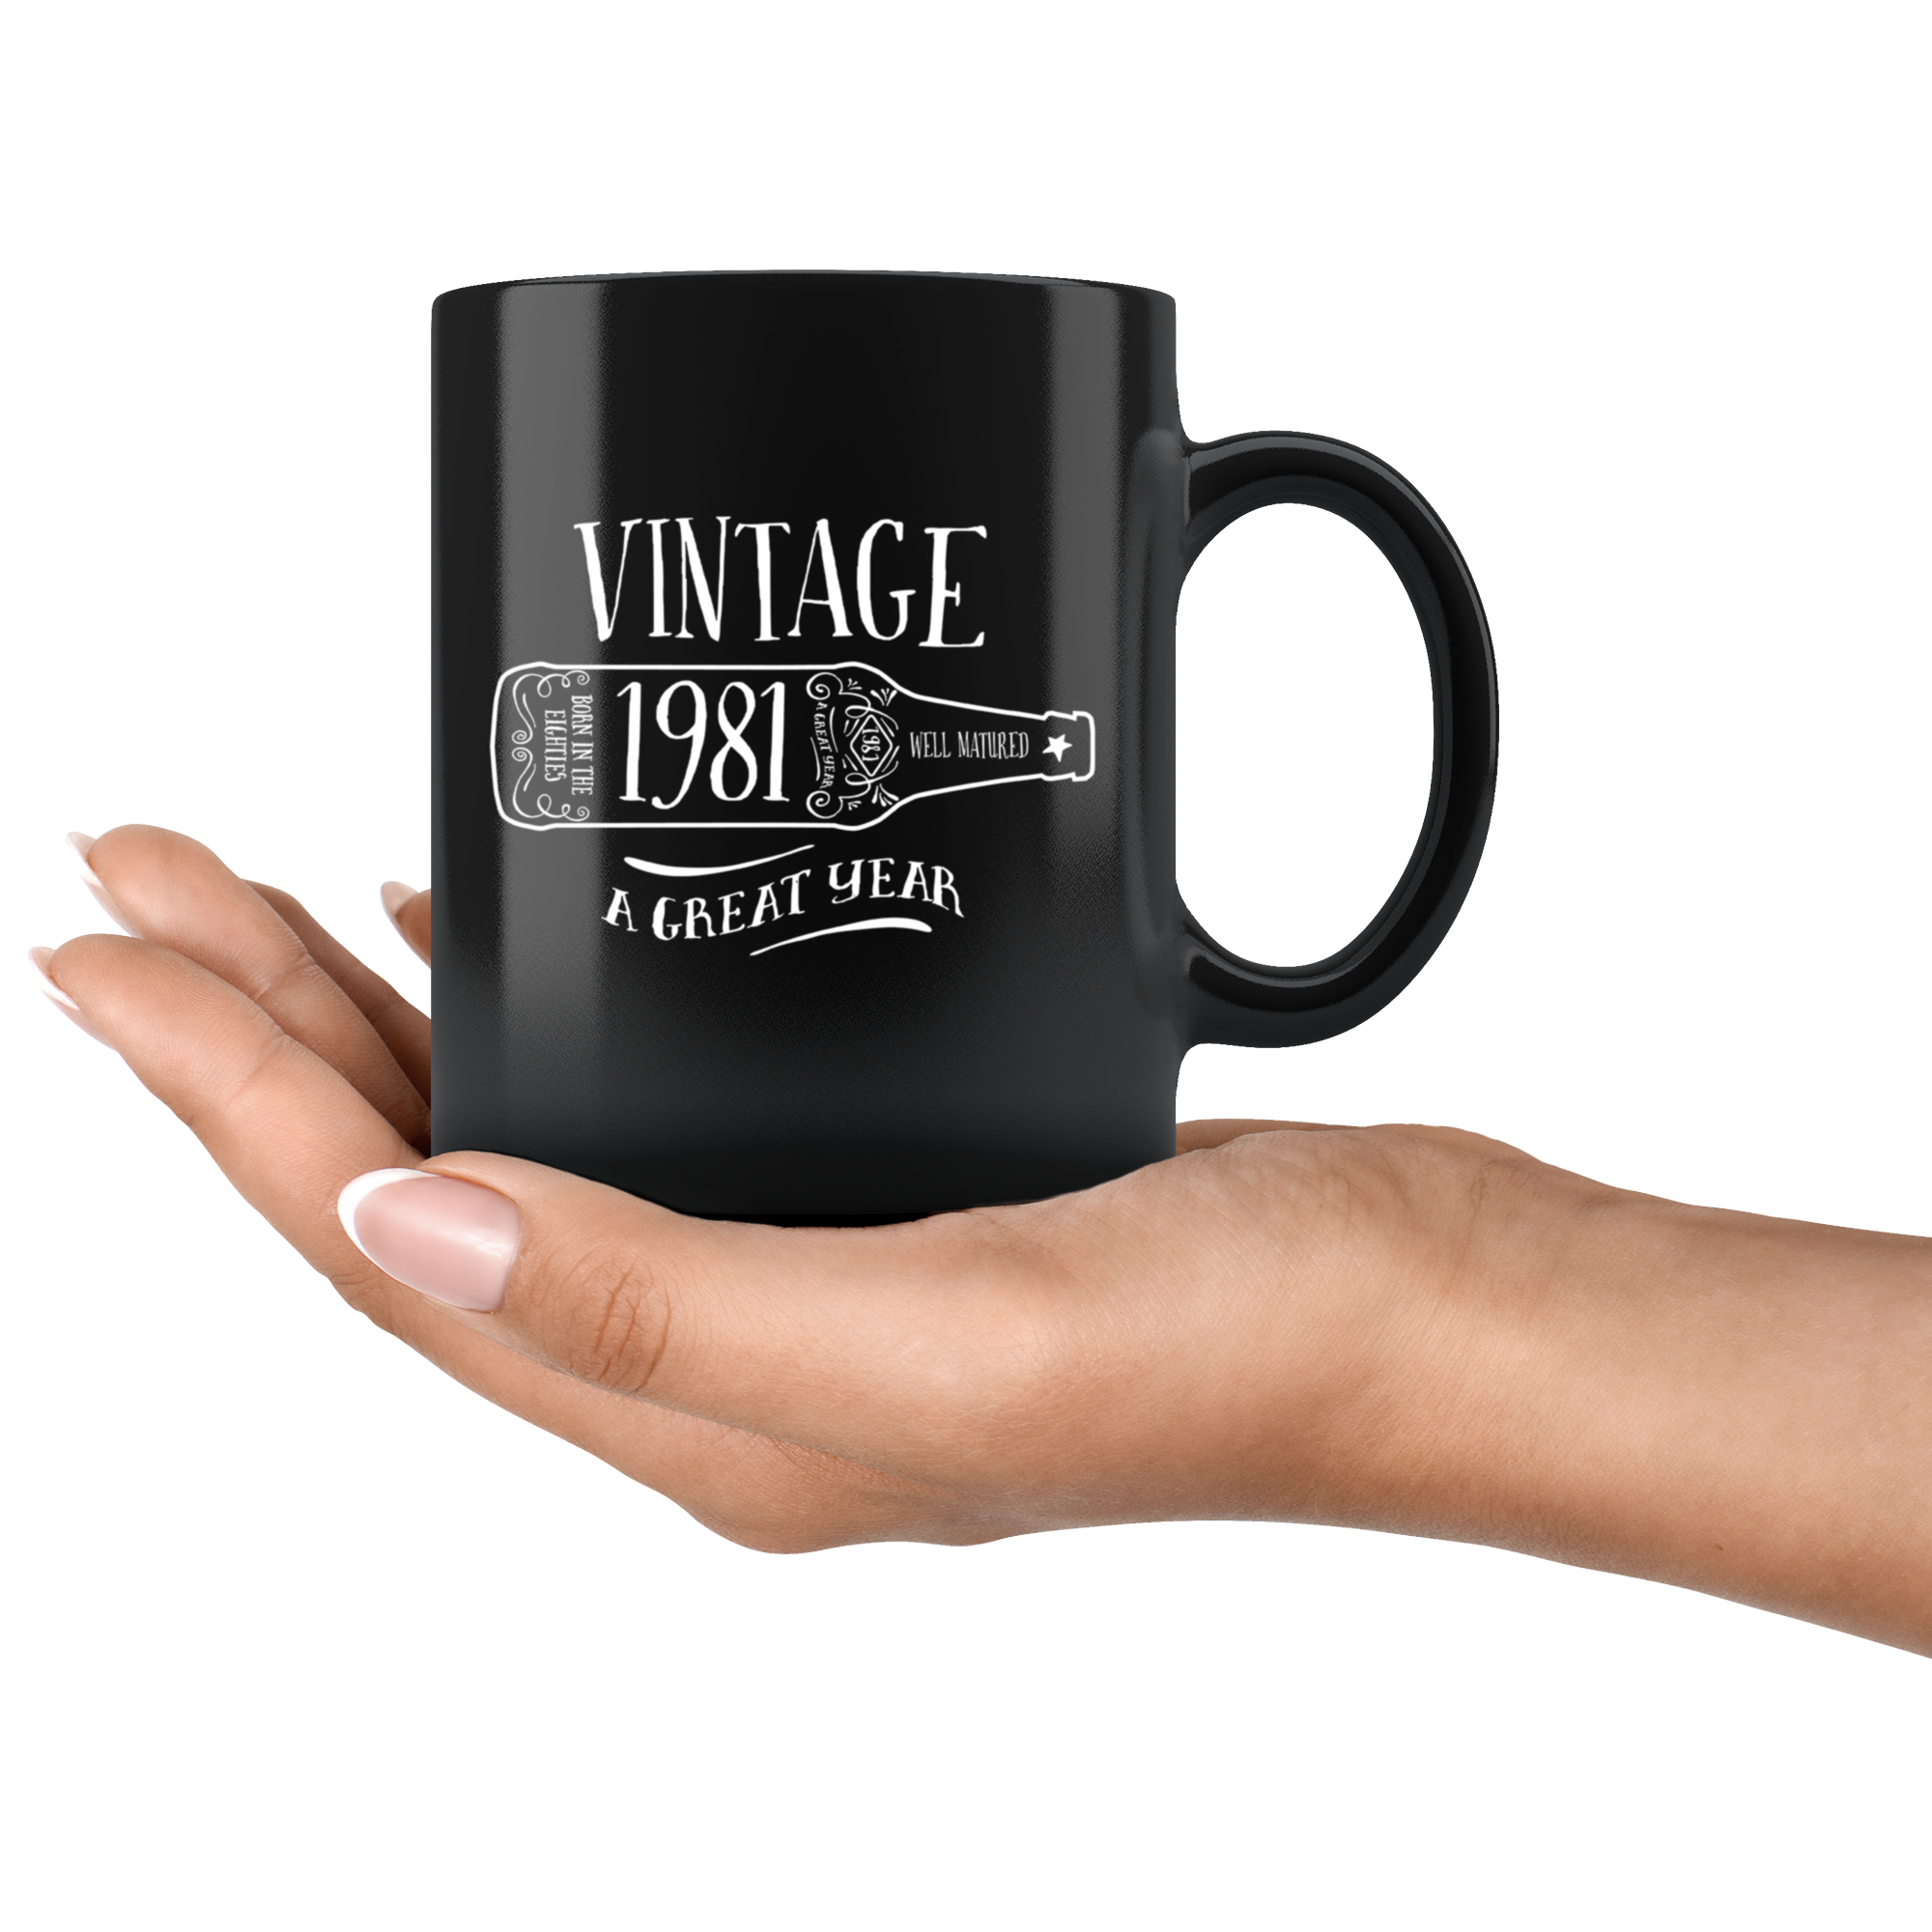 Vintage 1981 - Black Mug